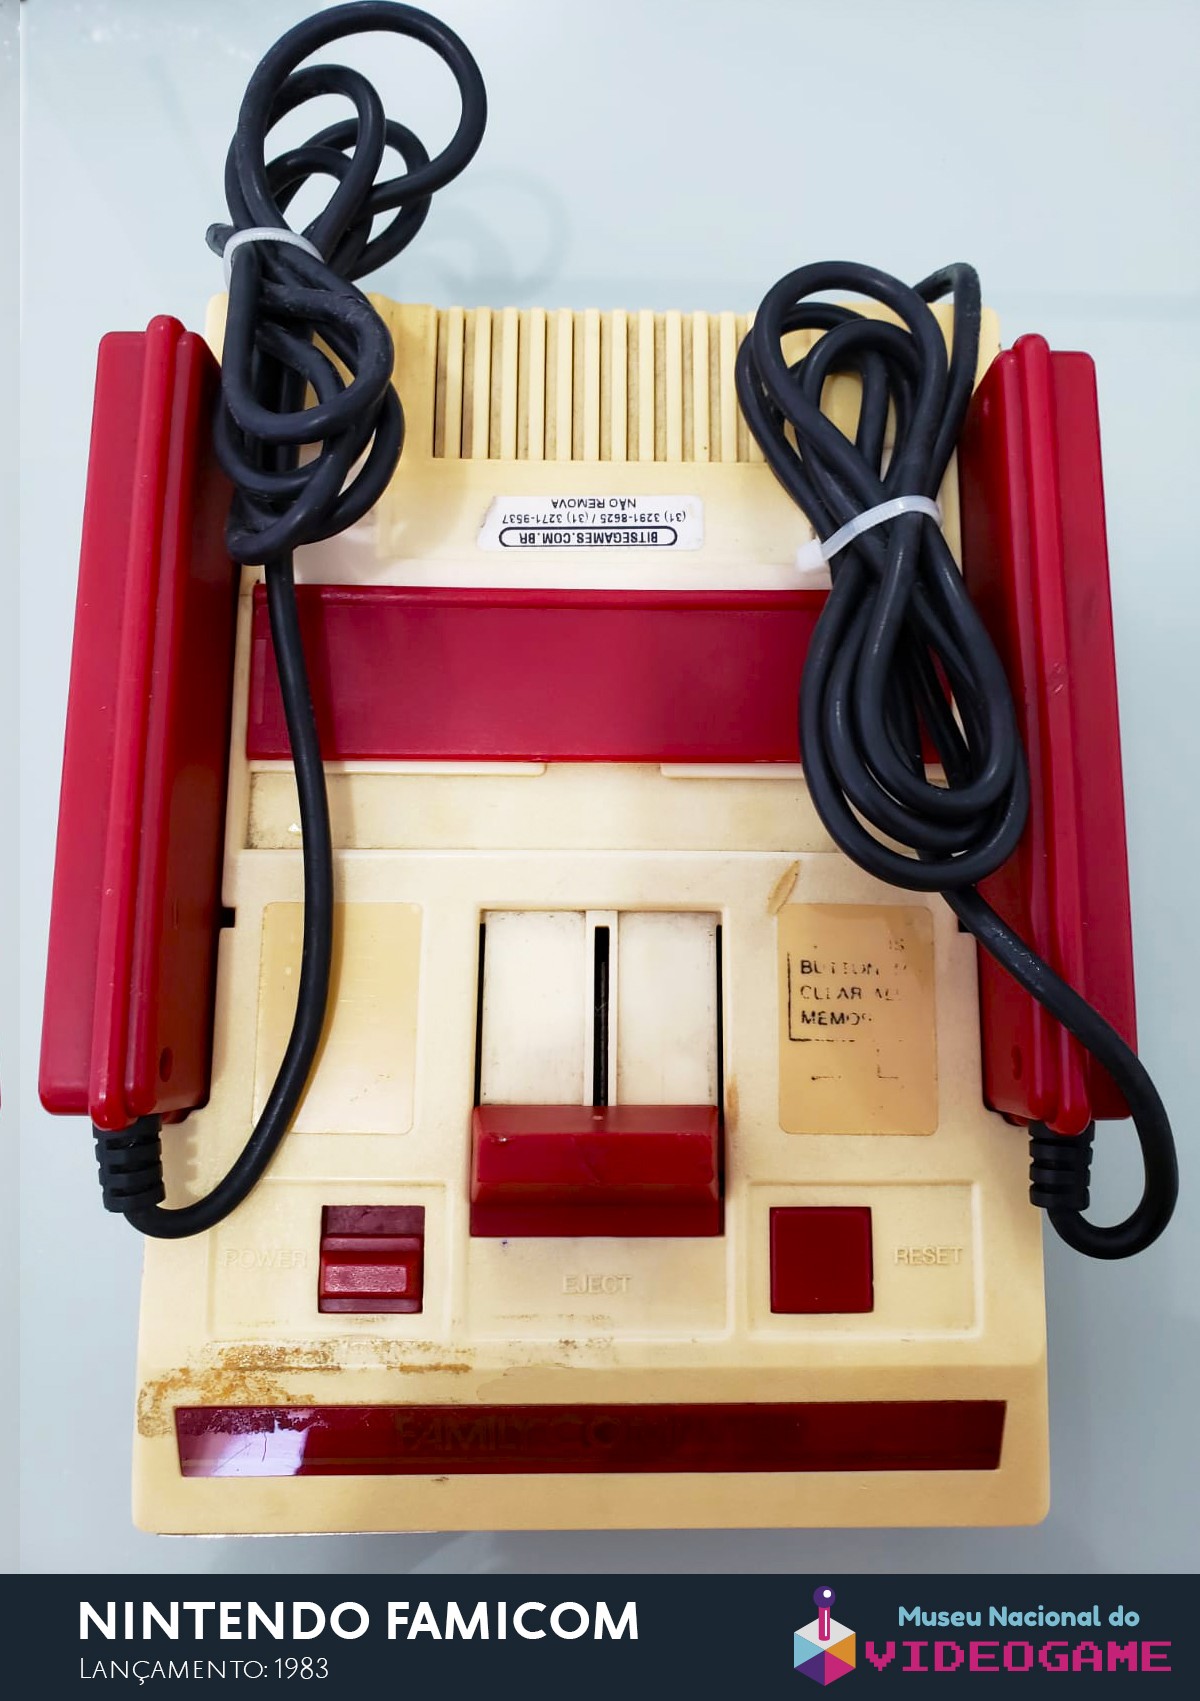 Nintendo Famicom (Foto: Divulgação)